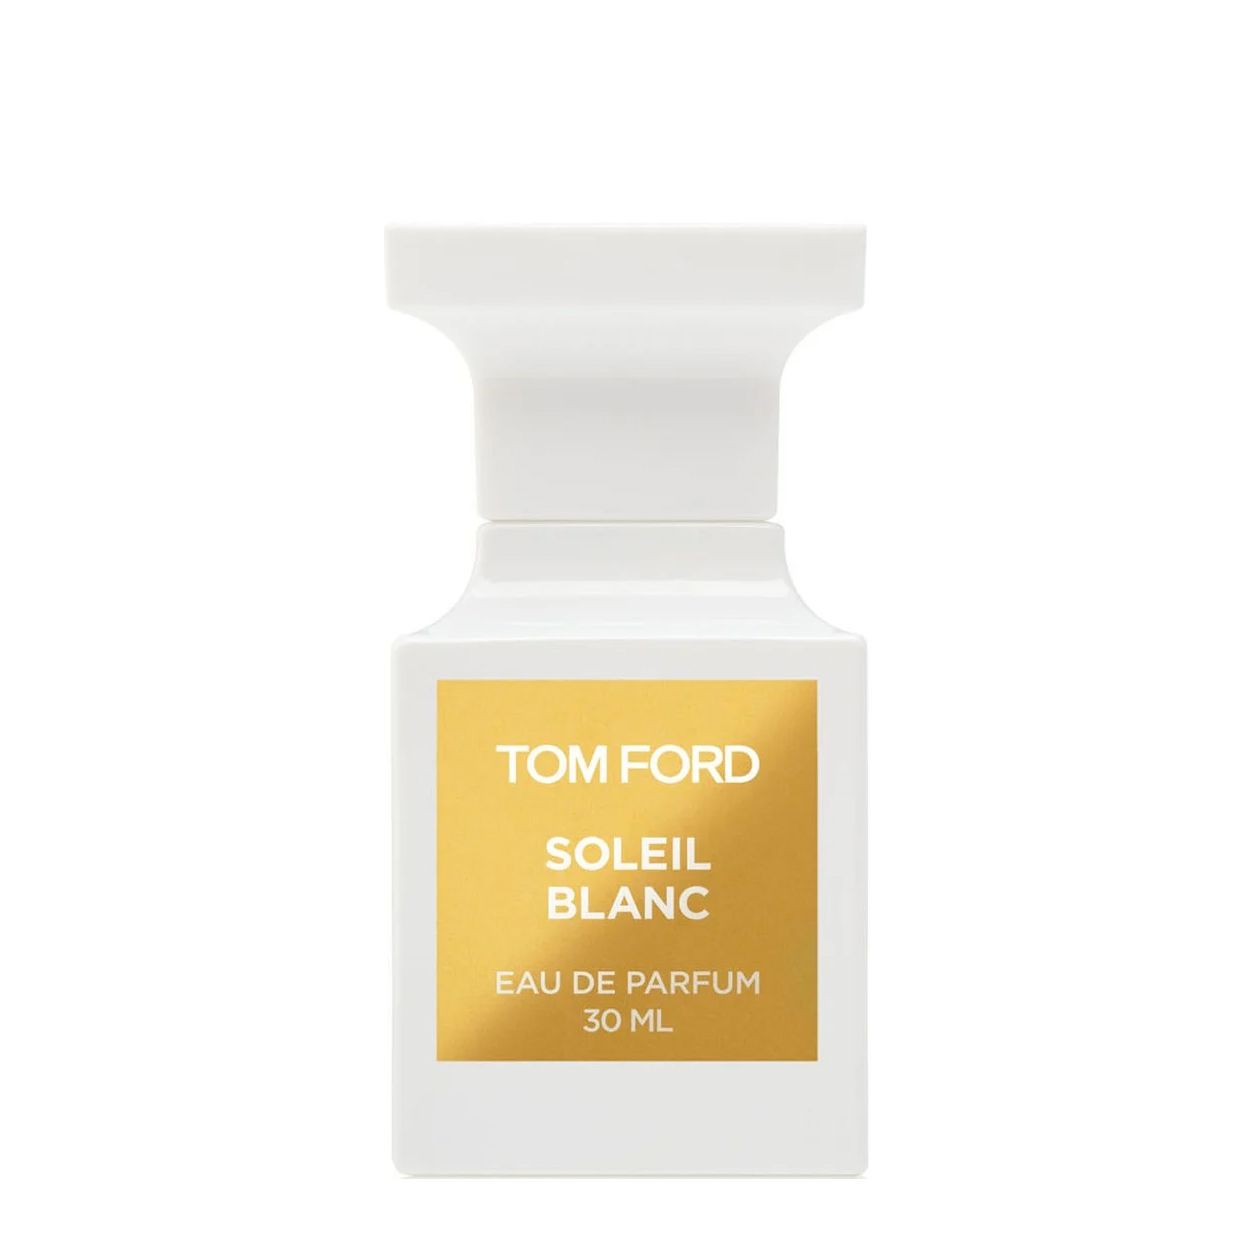 Вода парфюмерная Tom Ford Soleil Blanc, унисекс, 30 мл lalique soleil 100